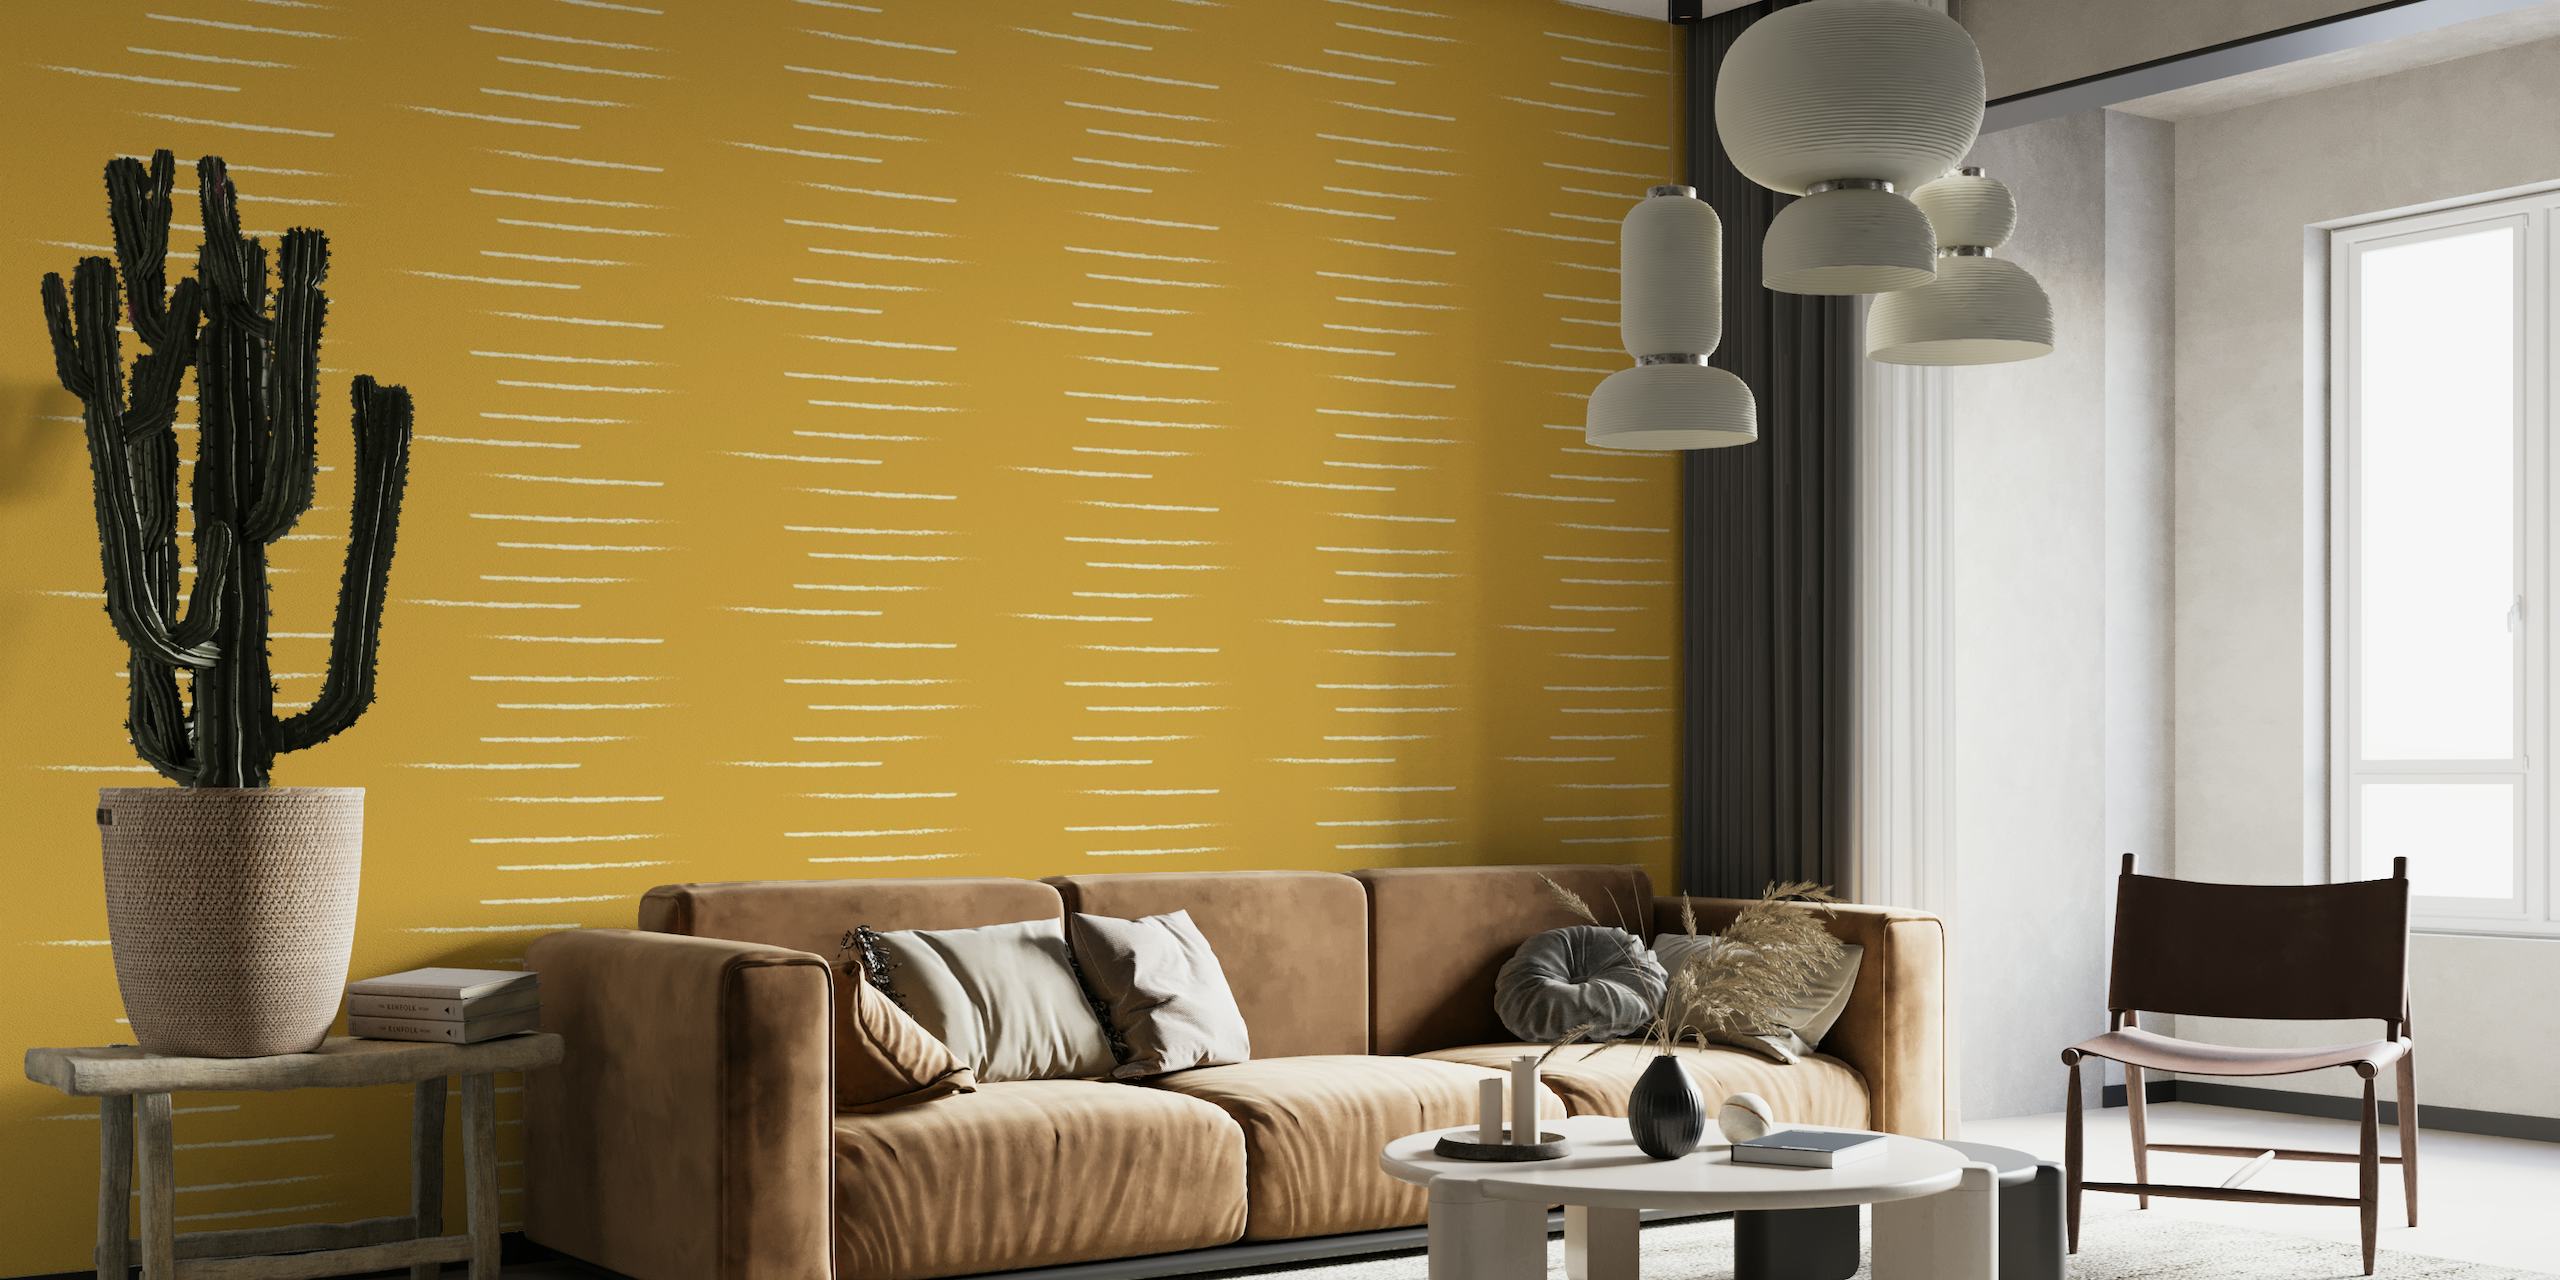 Papier peint mural à rayures horizontales dans des tons beige moutarde reflétant un style chaleureux et minimaliste